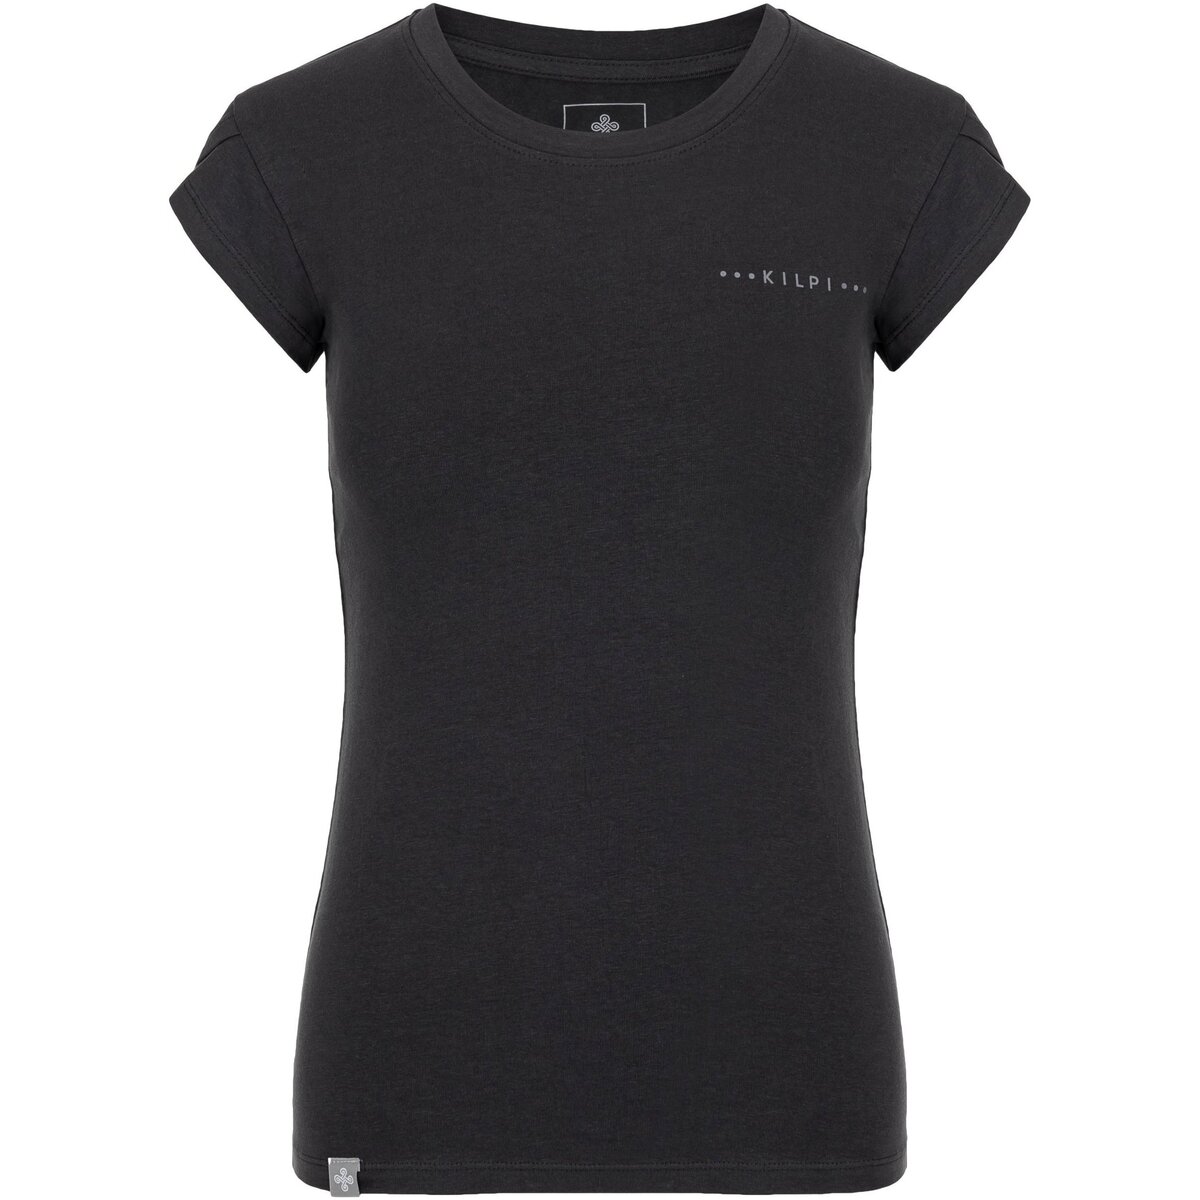 Kilpi Gris T-shirt coton femme LOS-W 8aW2Mht5